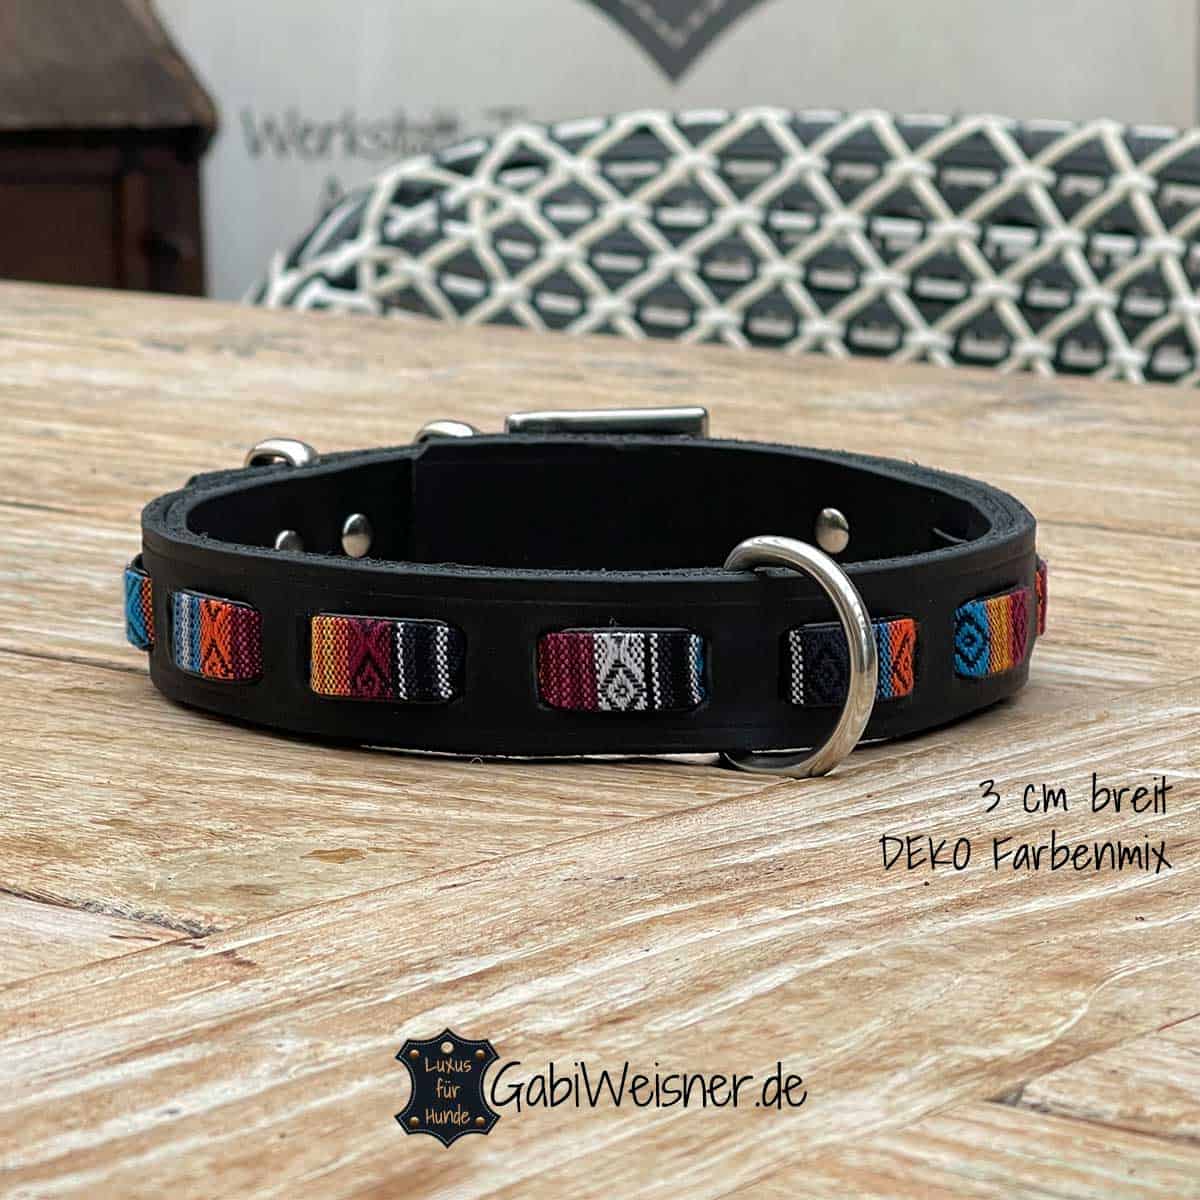 Hundehalsband verstellbar Leder Schwarz 3 cm breit DEKO Farbenmix